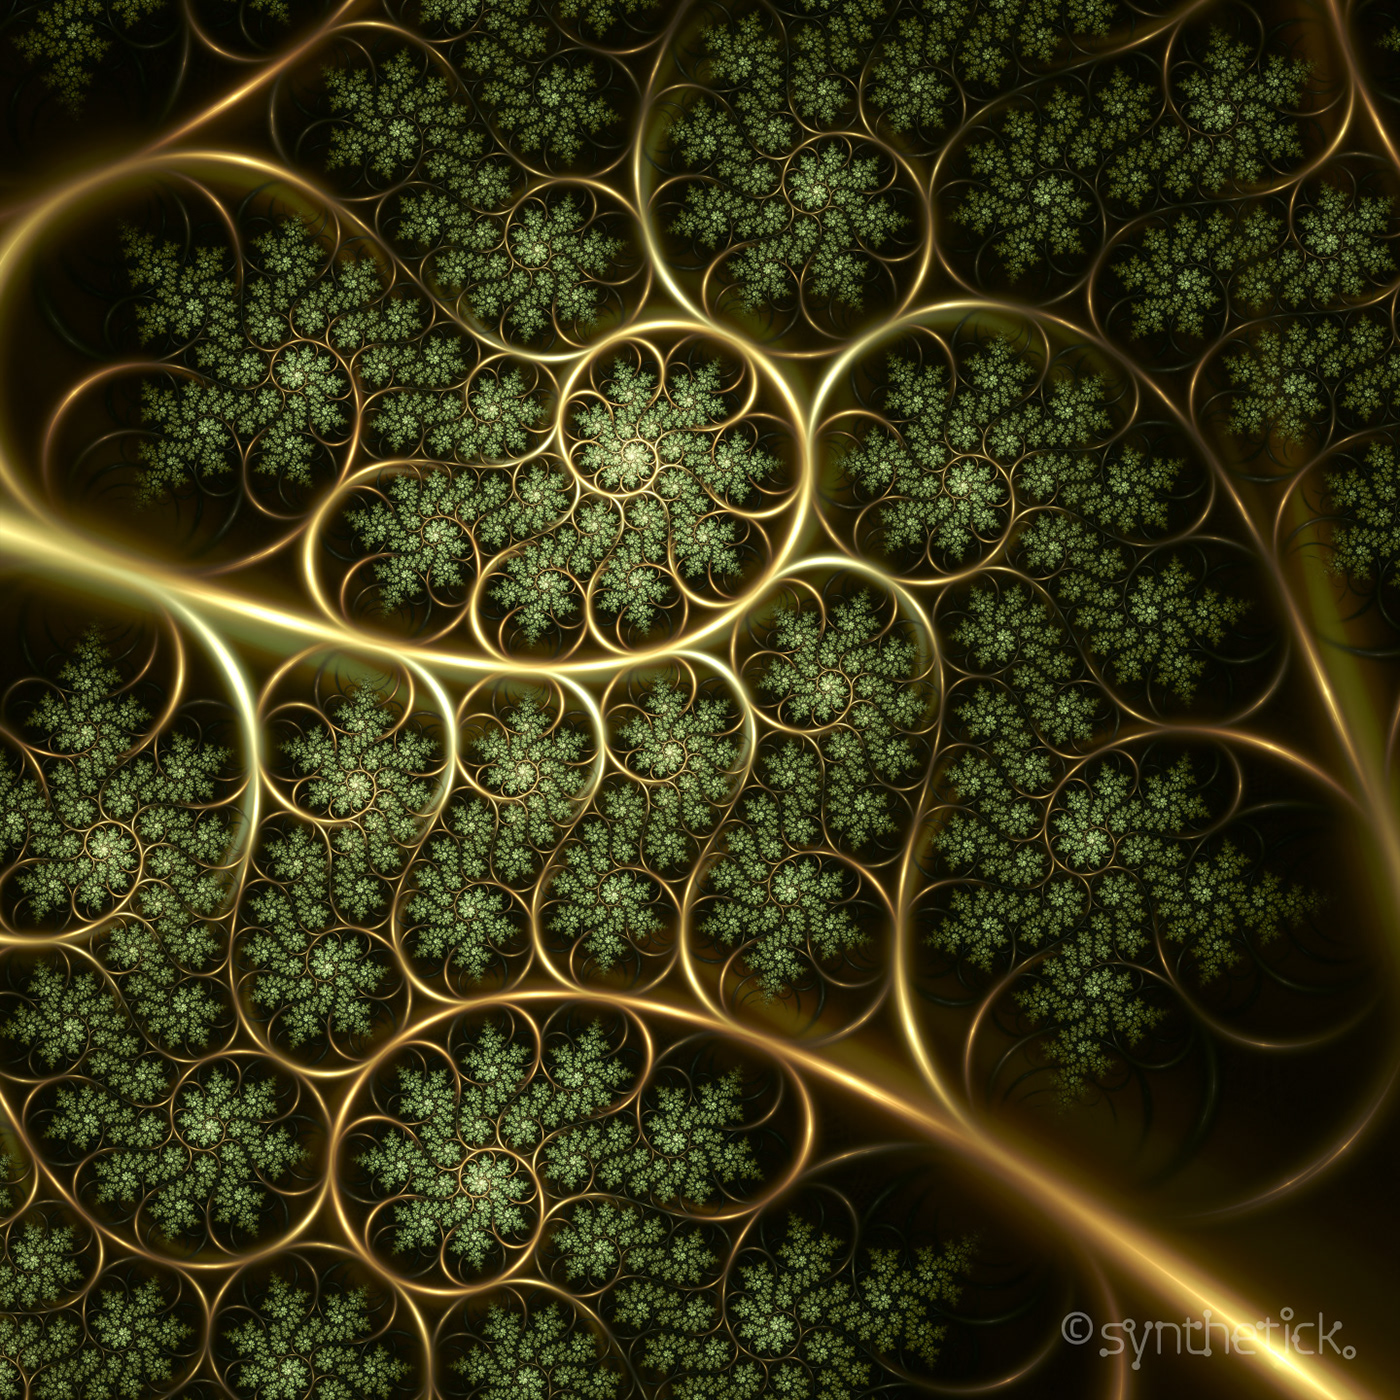 Kleinian fractal art